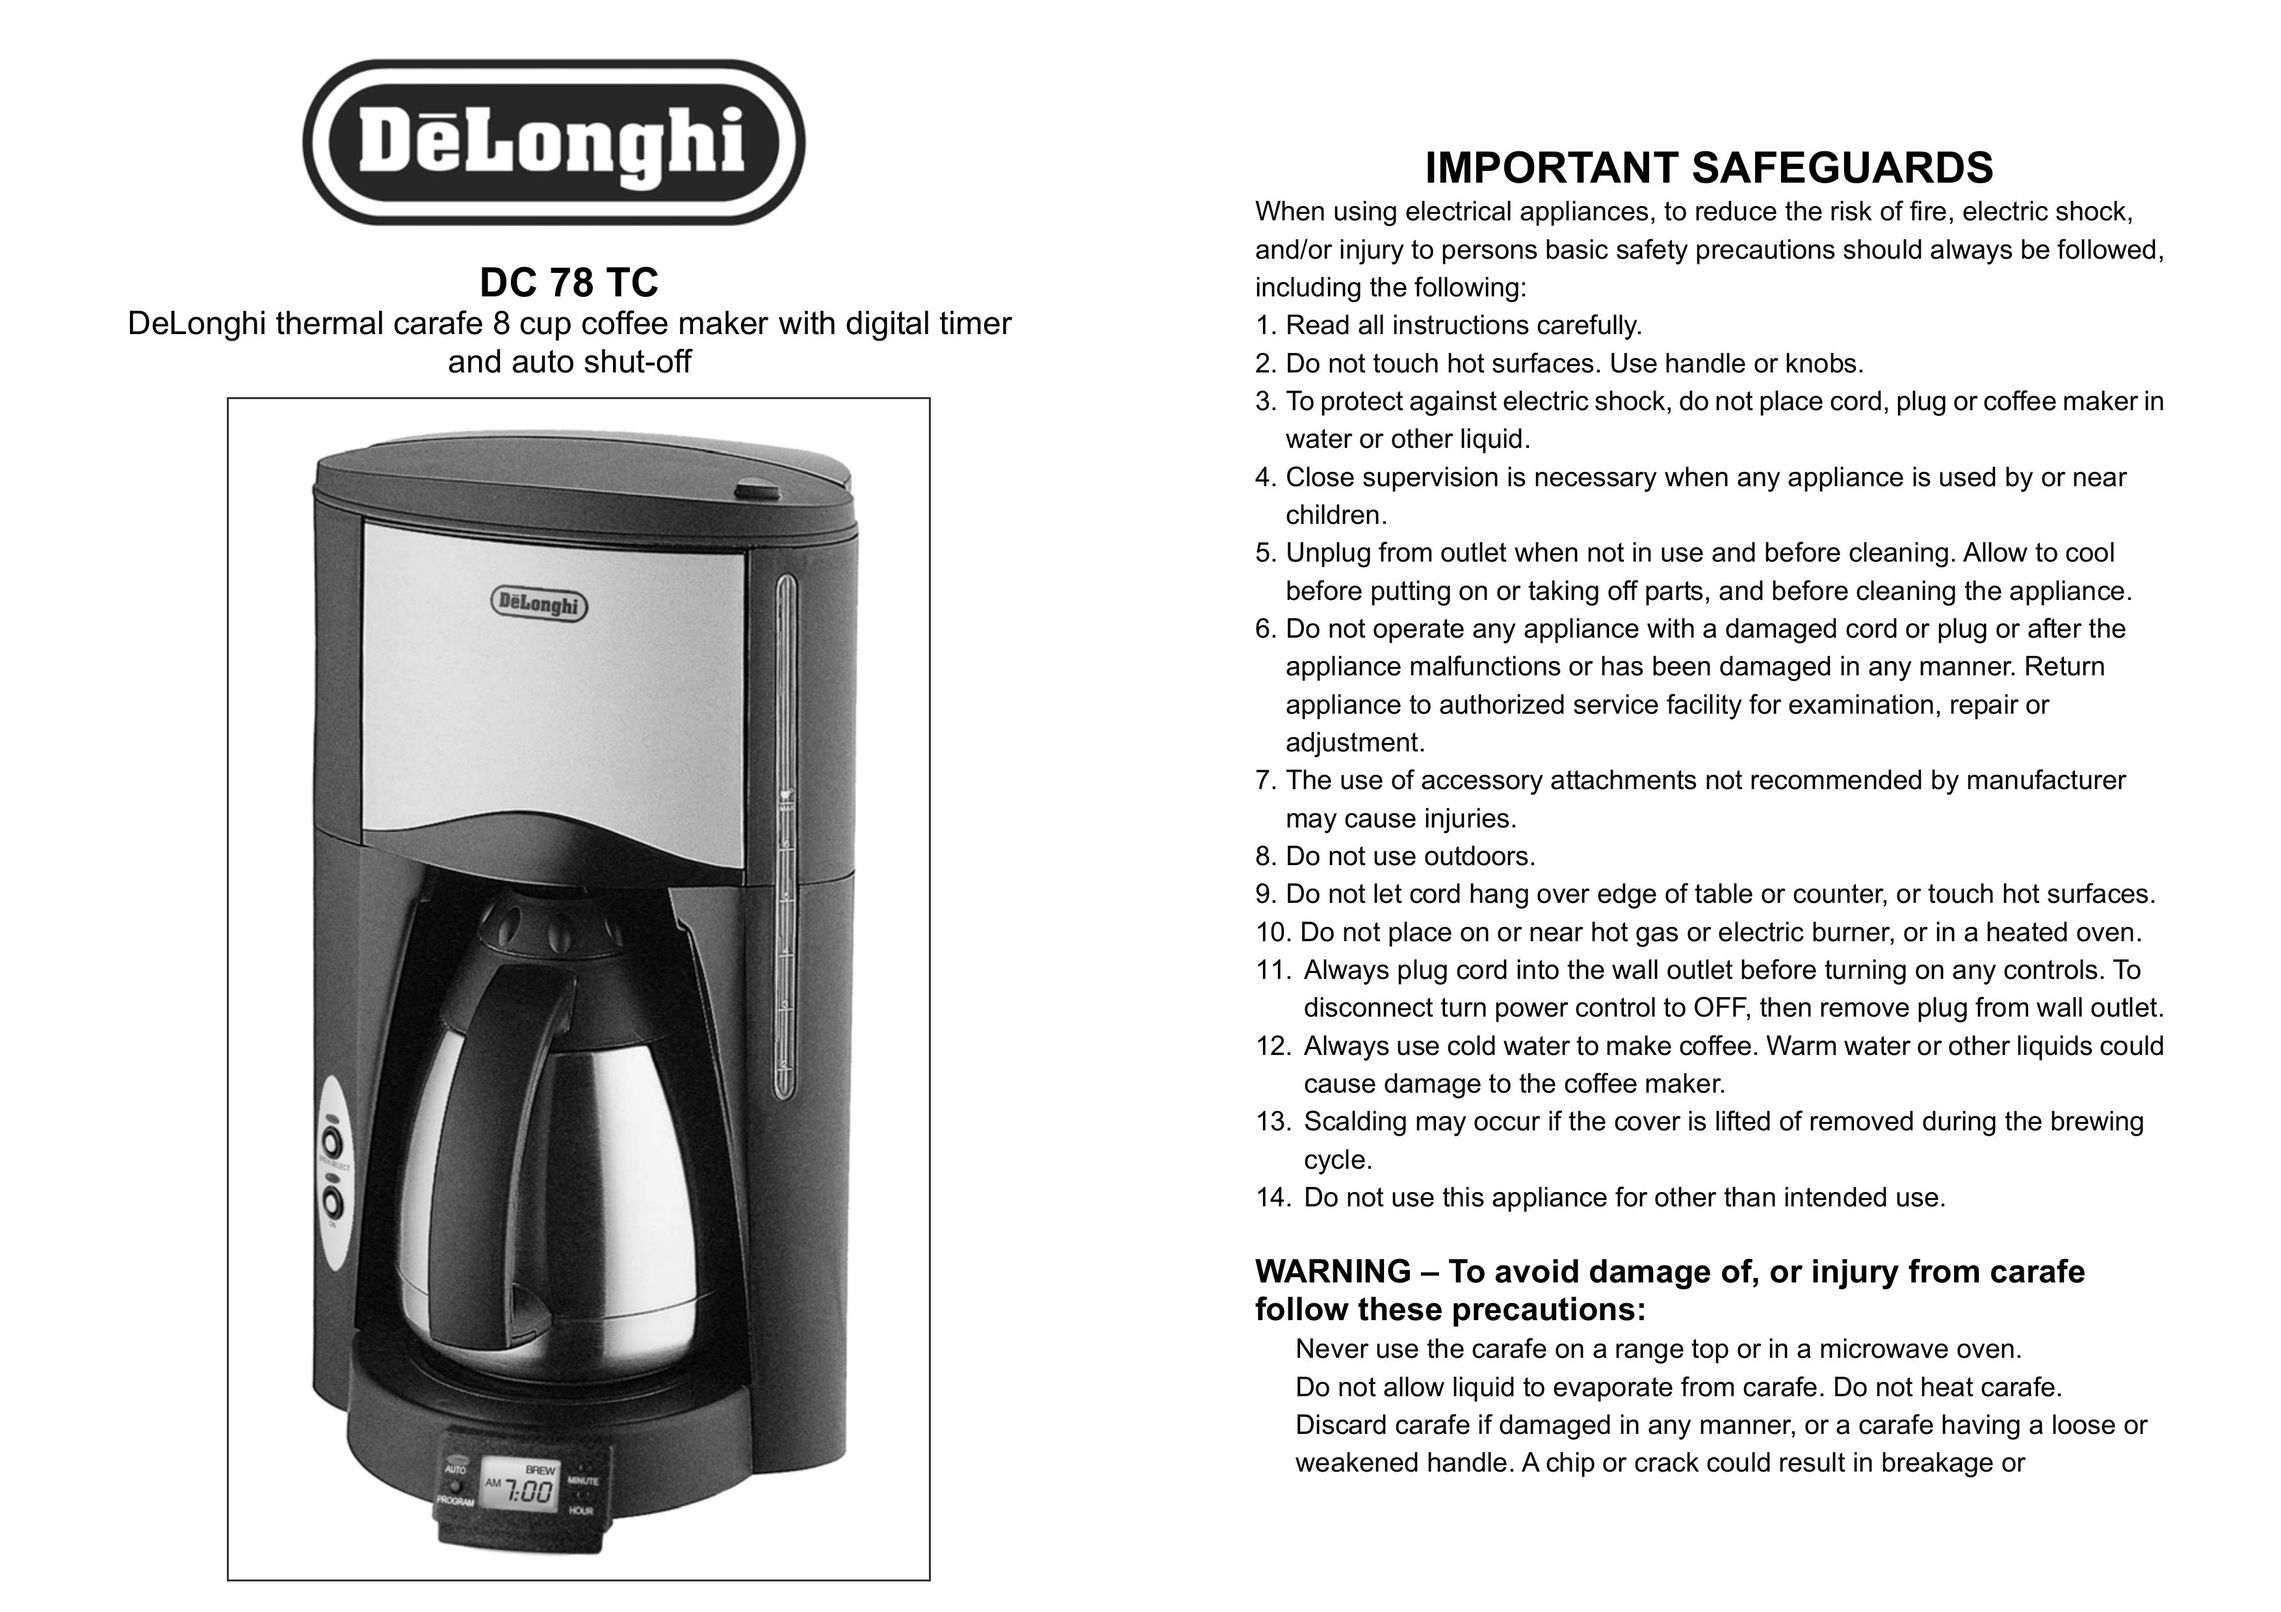 DeLonghi DC 78 TC Coffeemaker User Manual